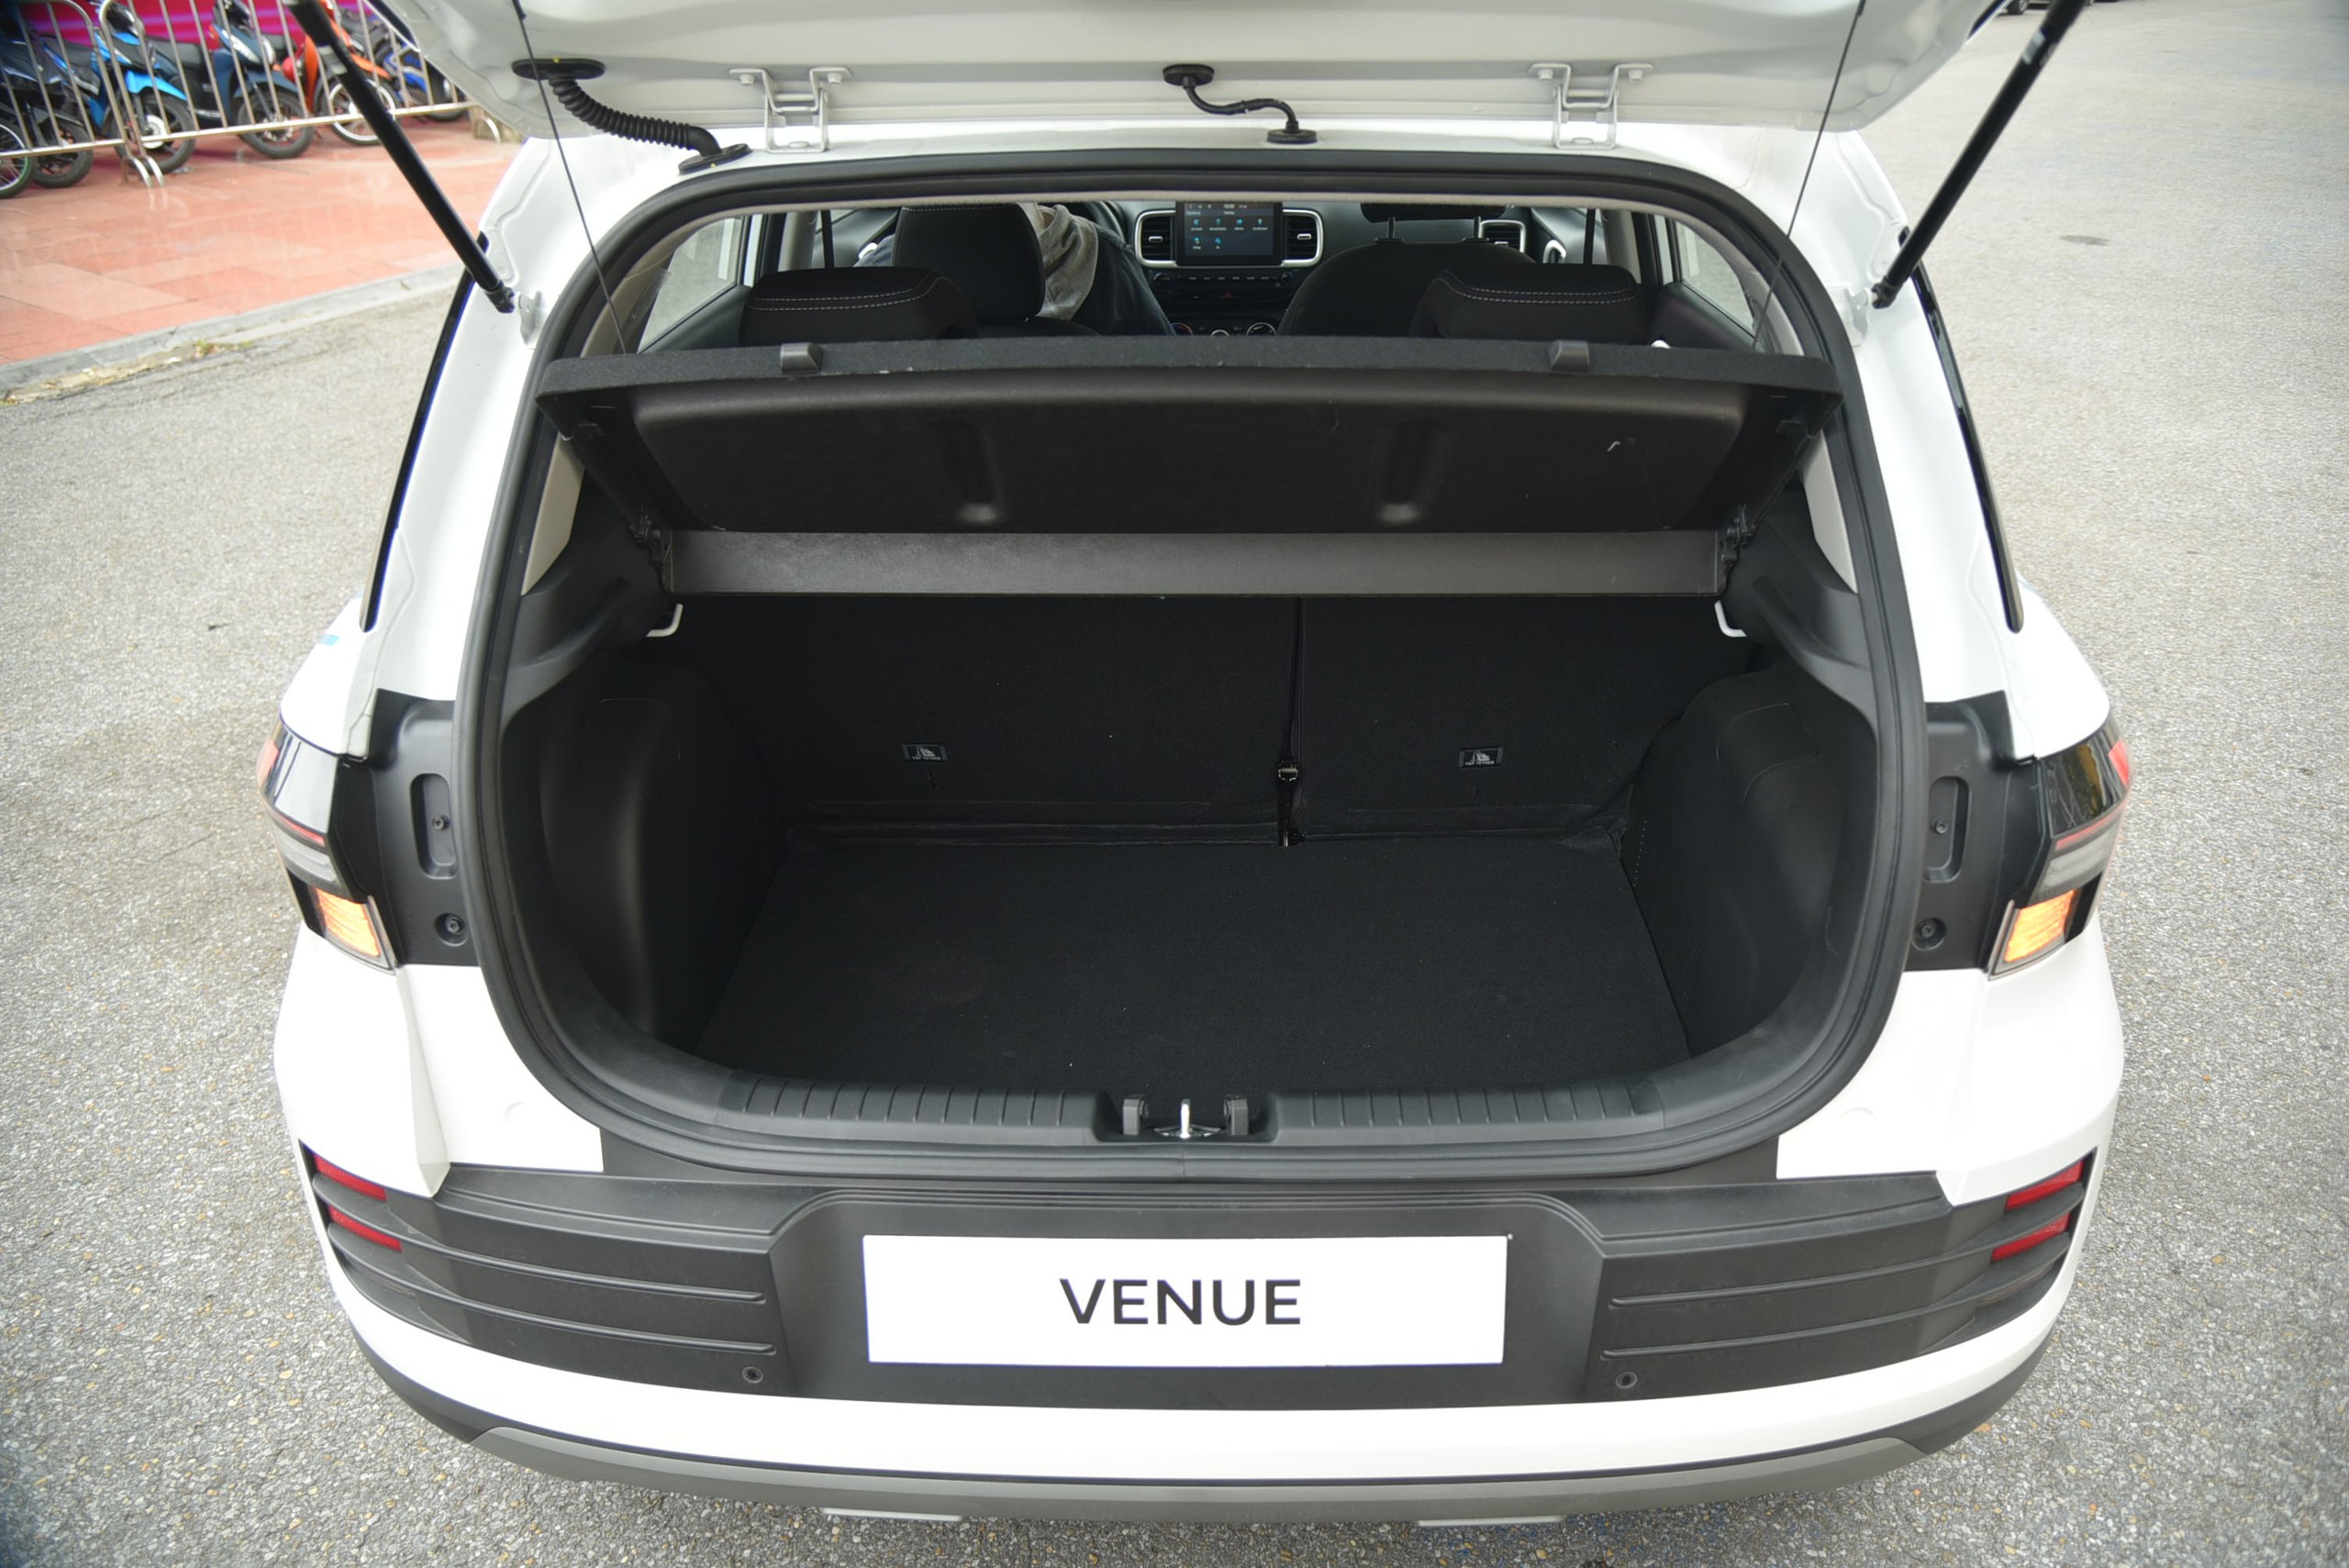 Ngồi thử Hyundai Venue phiên bản tiêu chuẩn: Rẻ hơn 40 triệu đồng, trang bị không khác biệt nhiều - Ảnh 14.